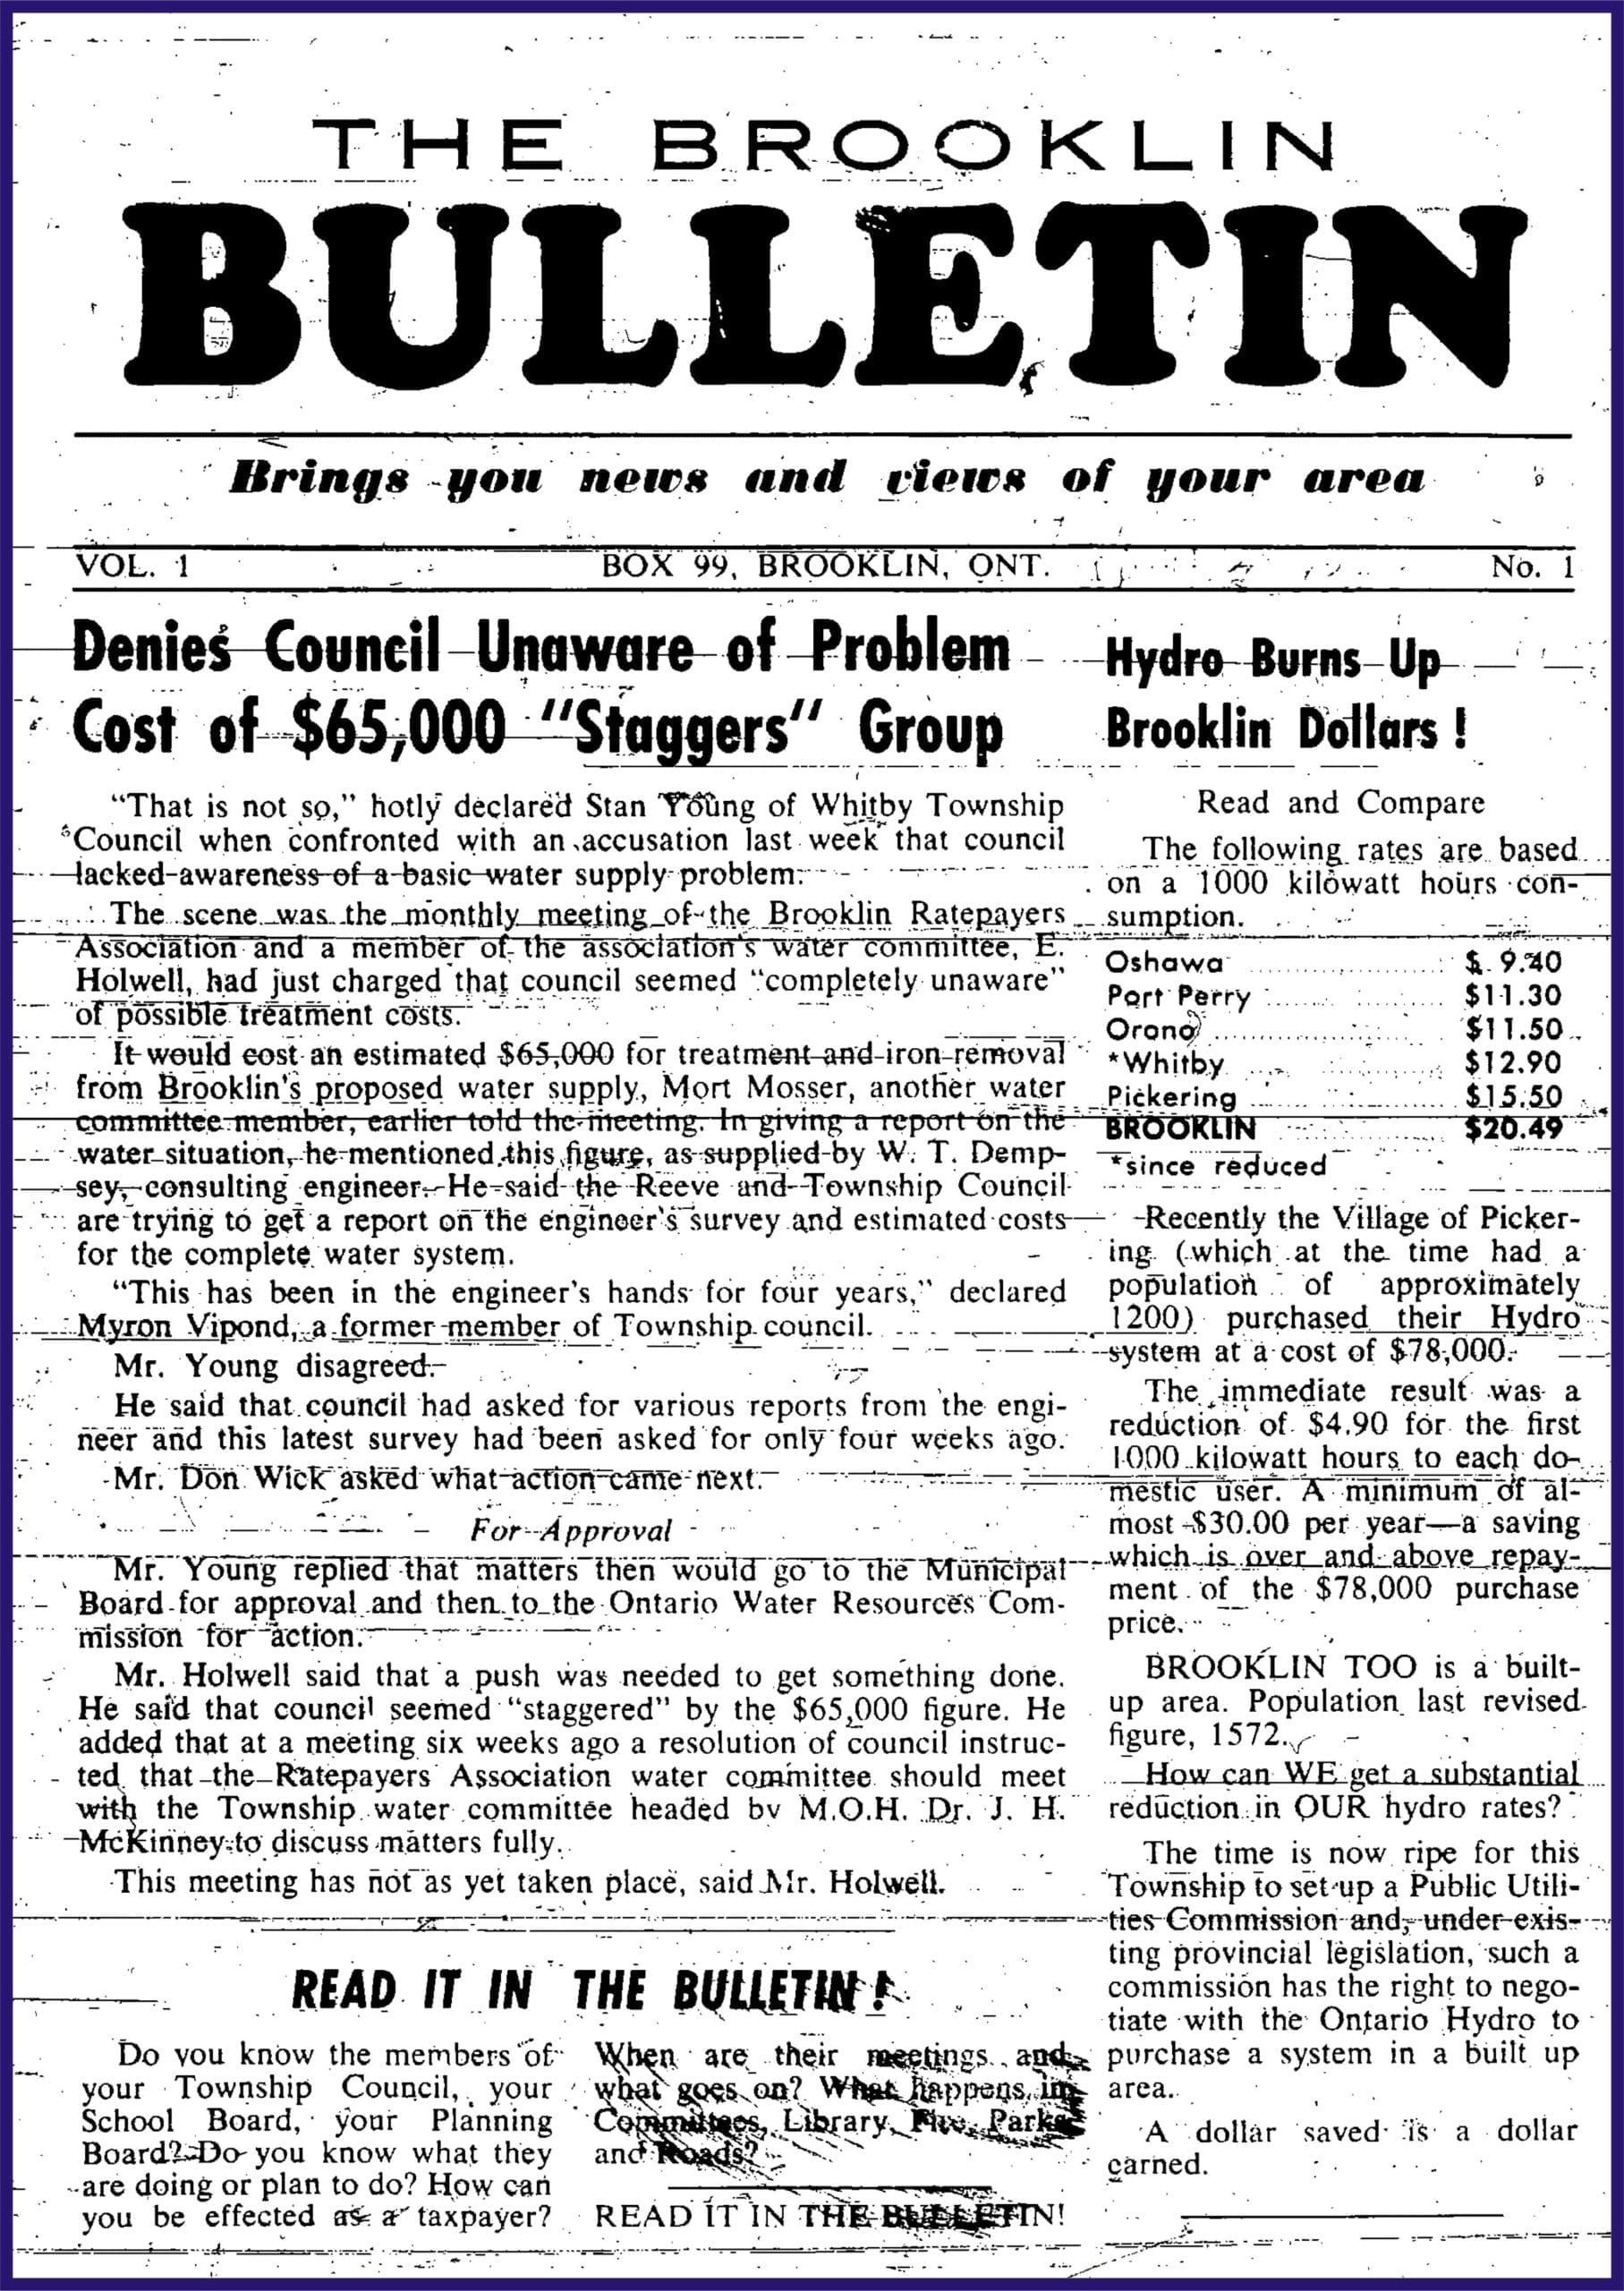 The Brooklin Bulletin Newspaper vol 1, issue 1, 1958